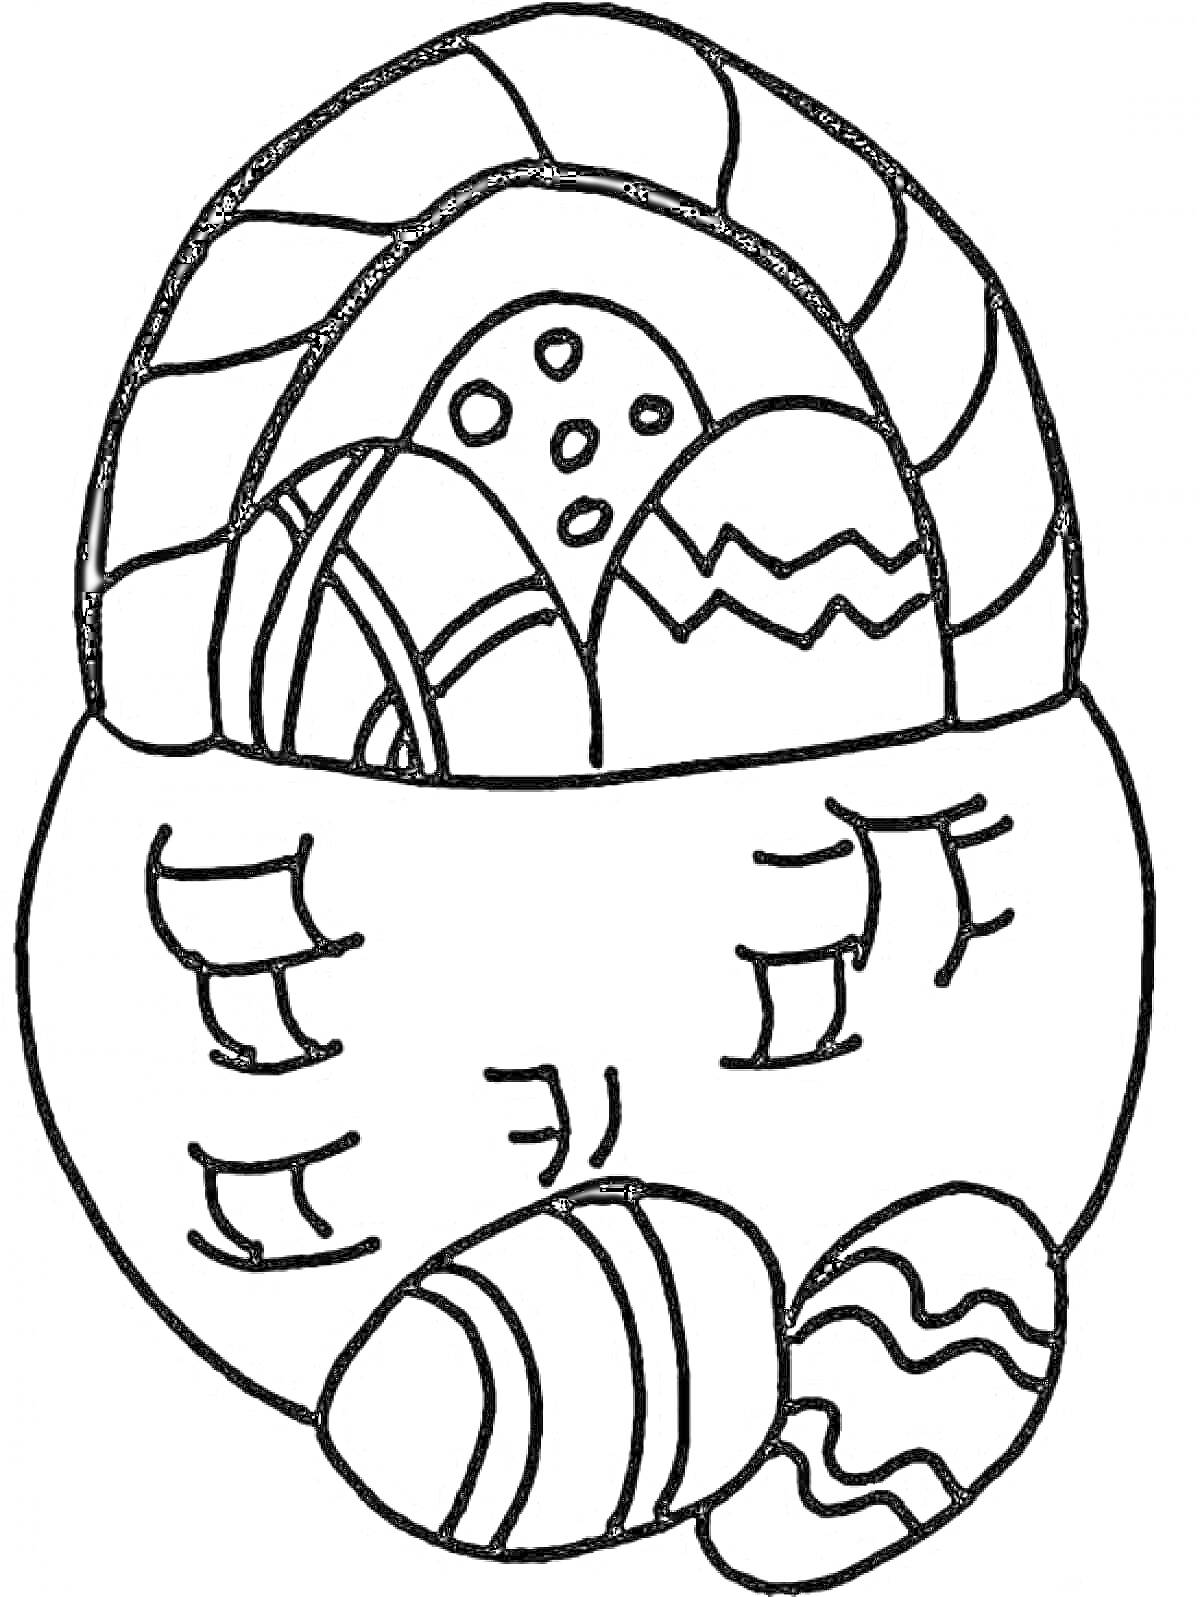 Раскраска Плетеная корзина с пасхальными яйцами, украшенными узорами